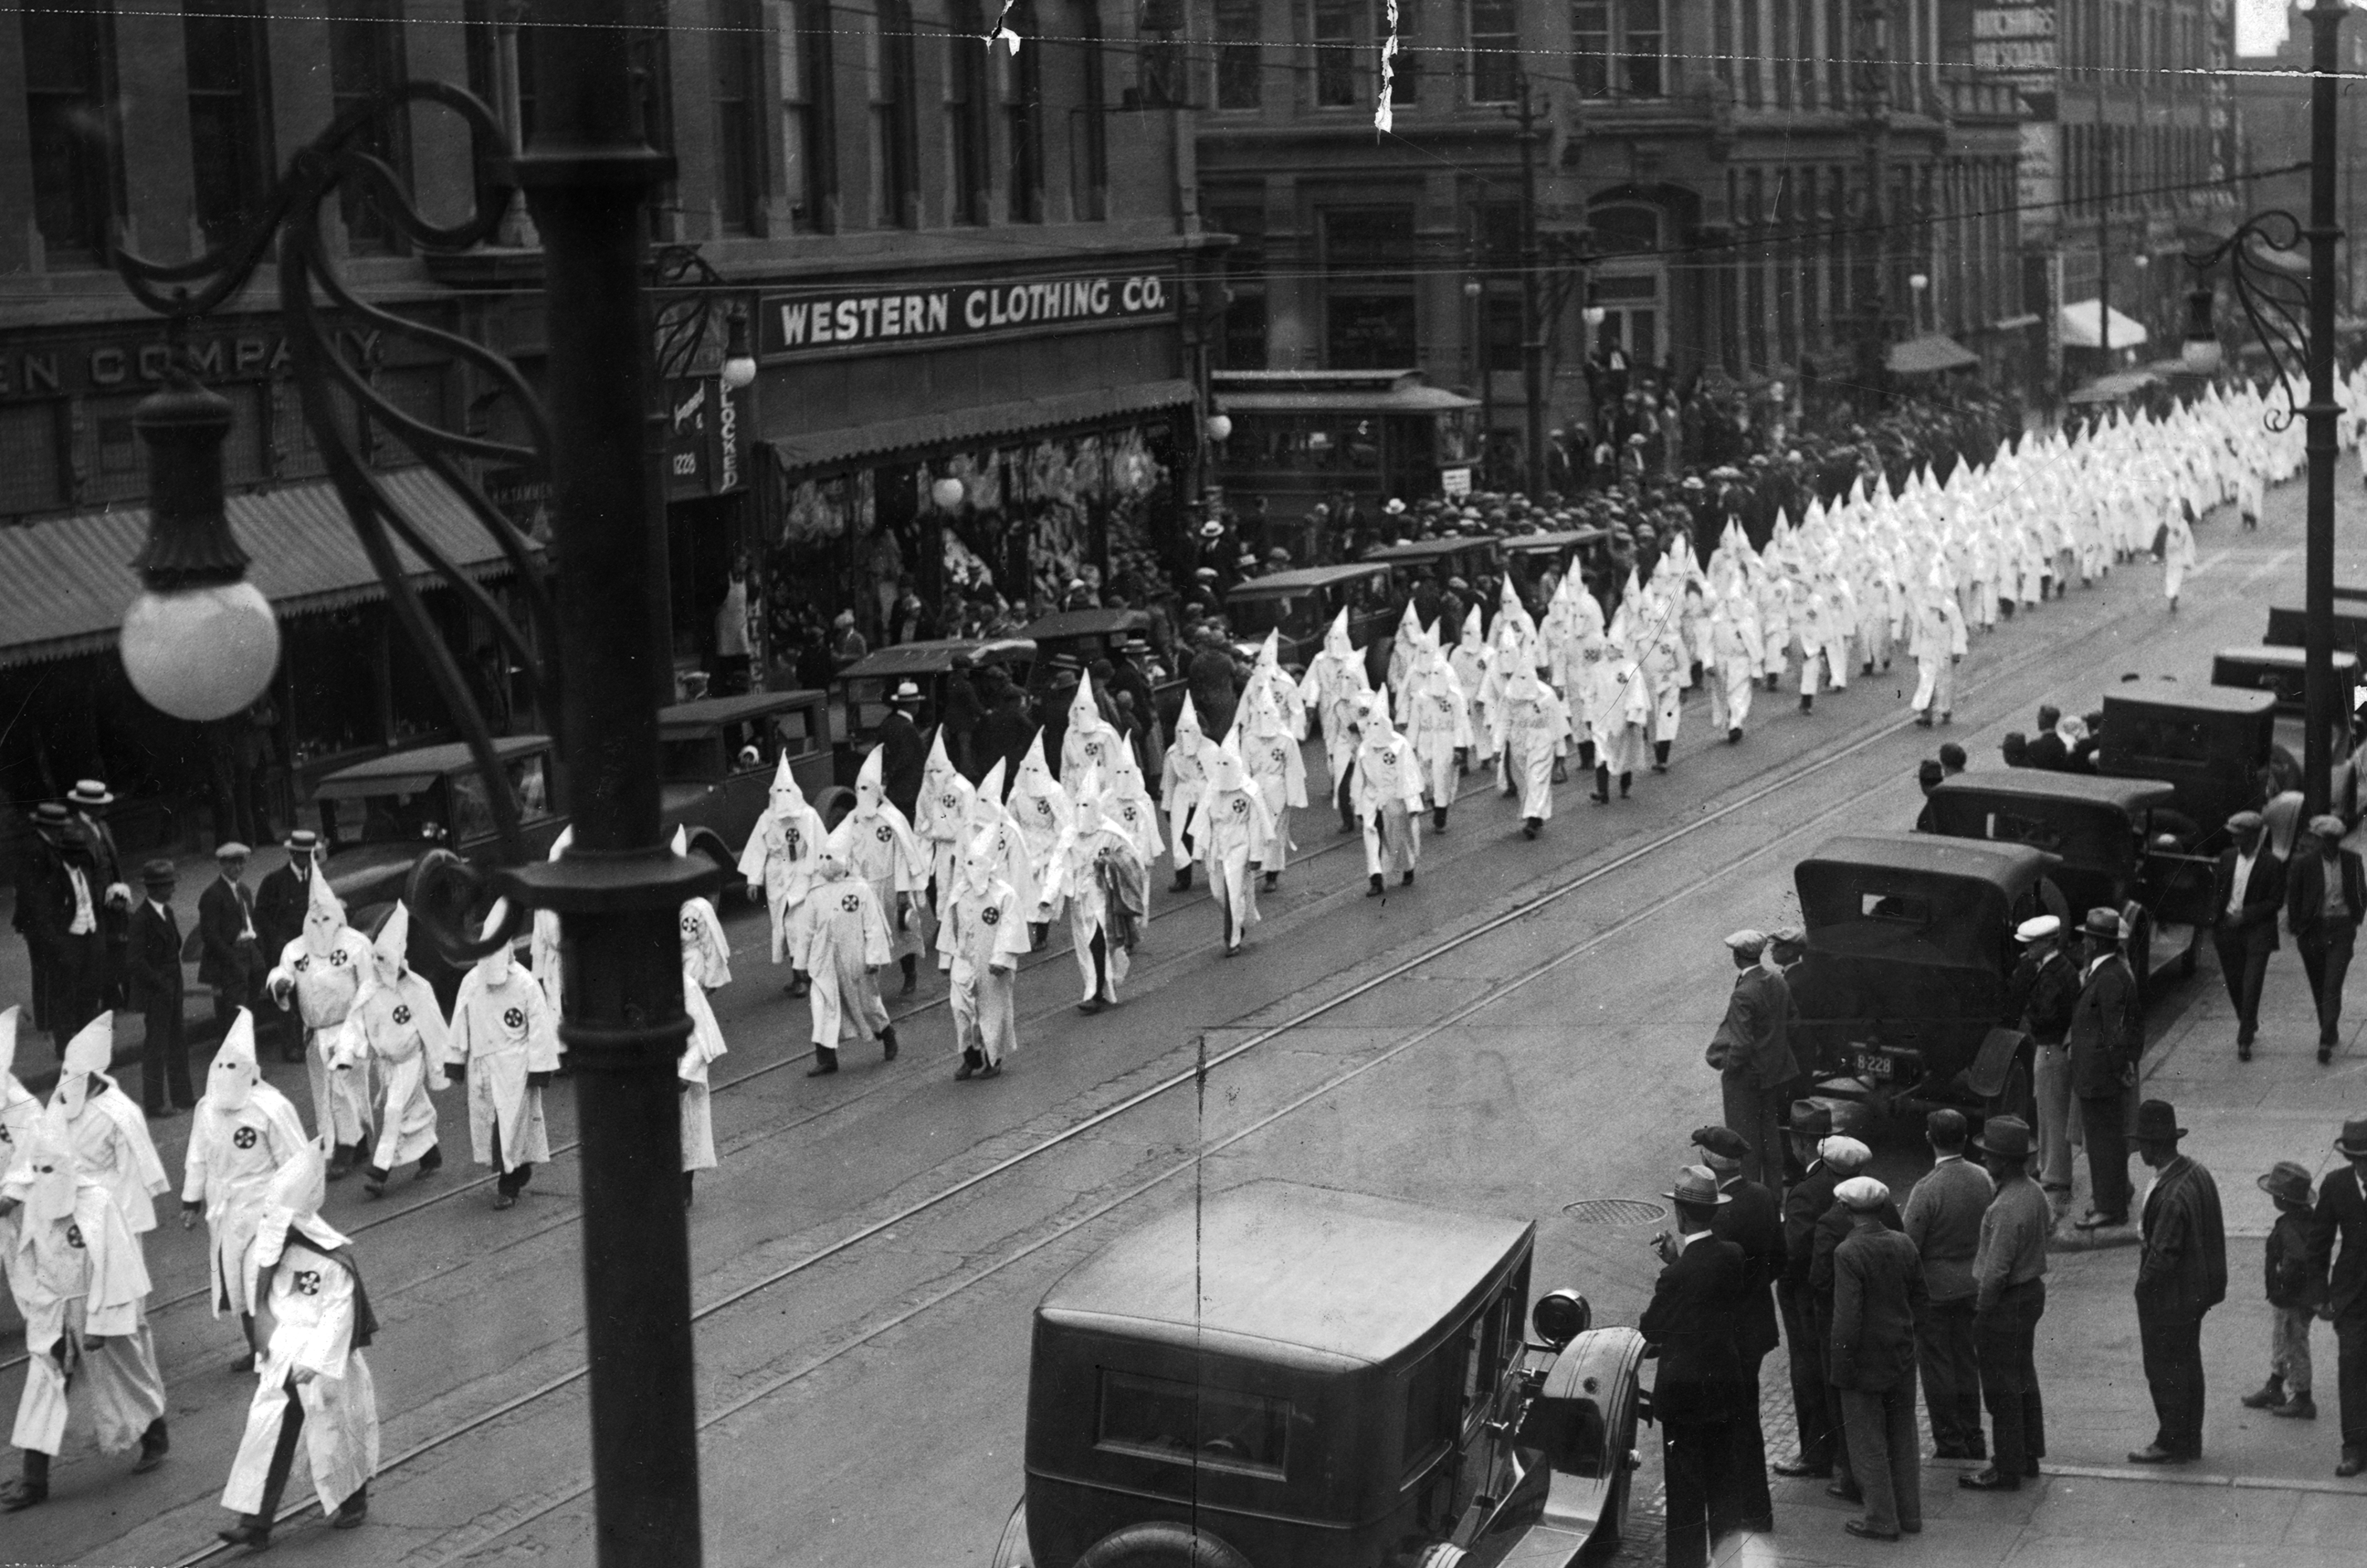 Members of the Klu Klux Klan march down 17th Street in Denver